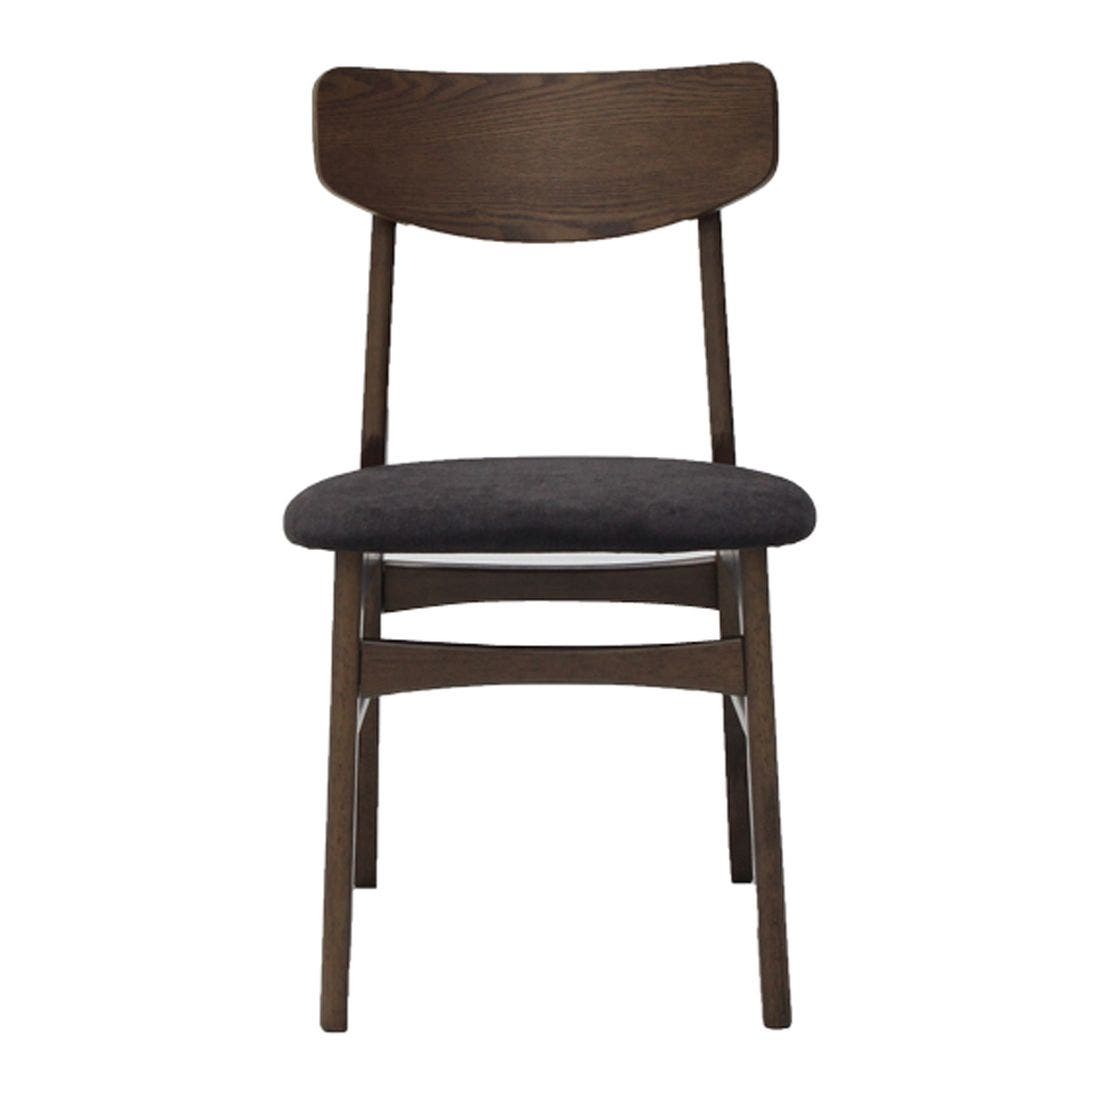 เก้าอี้ทานอาหาร เก้าอี้ไม้เบาะผ้า รุ่น Minho สีสีน้ำตาล-SB Design Square